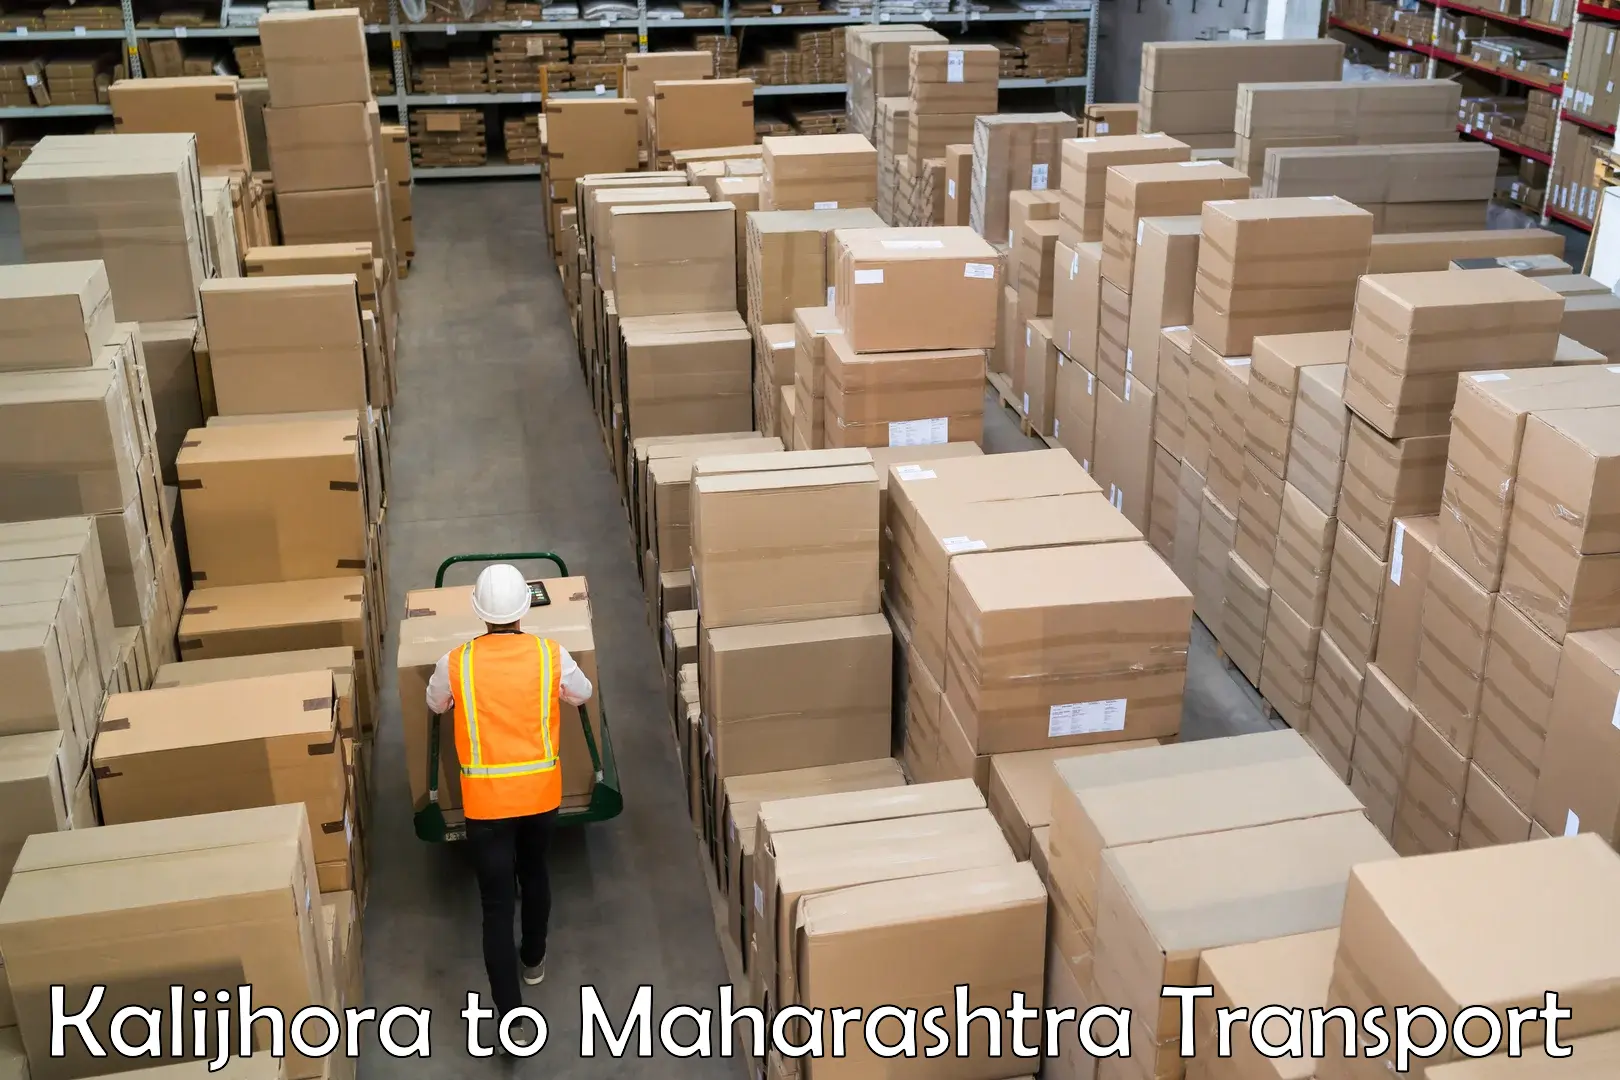 Parcel transport services Kalijhora to Maharashtra